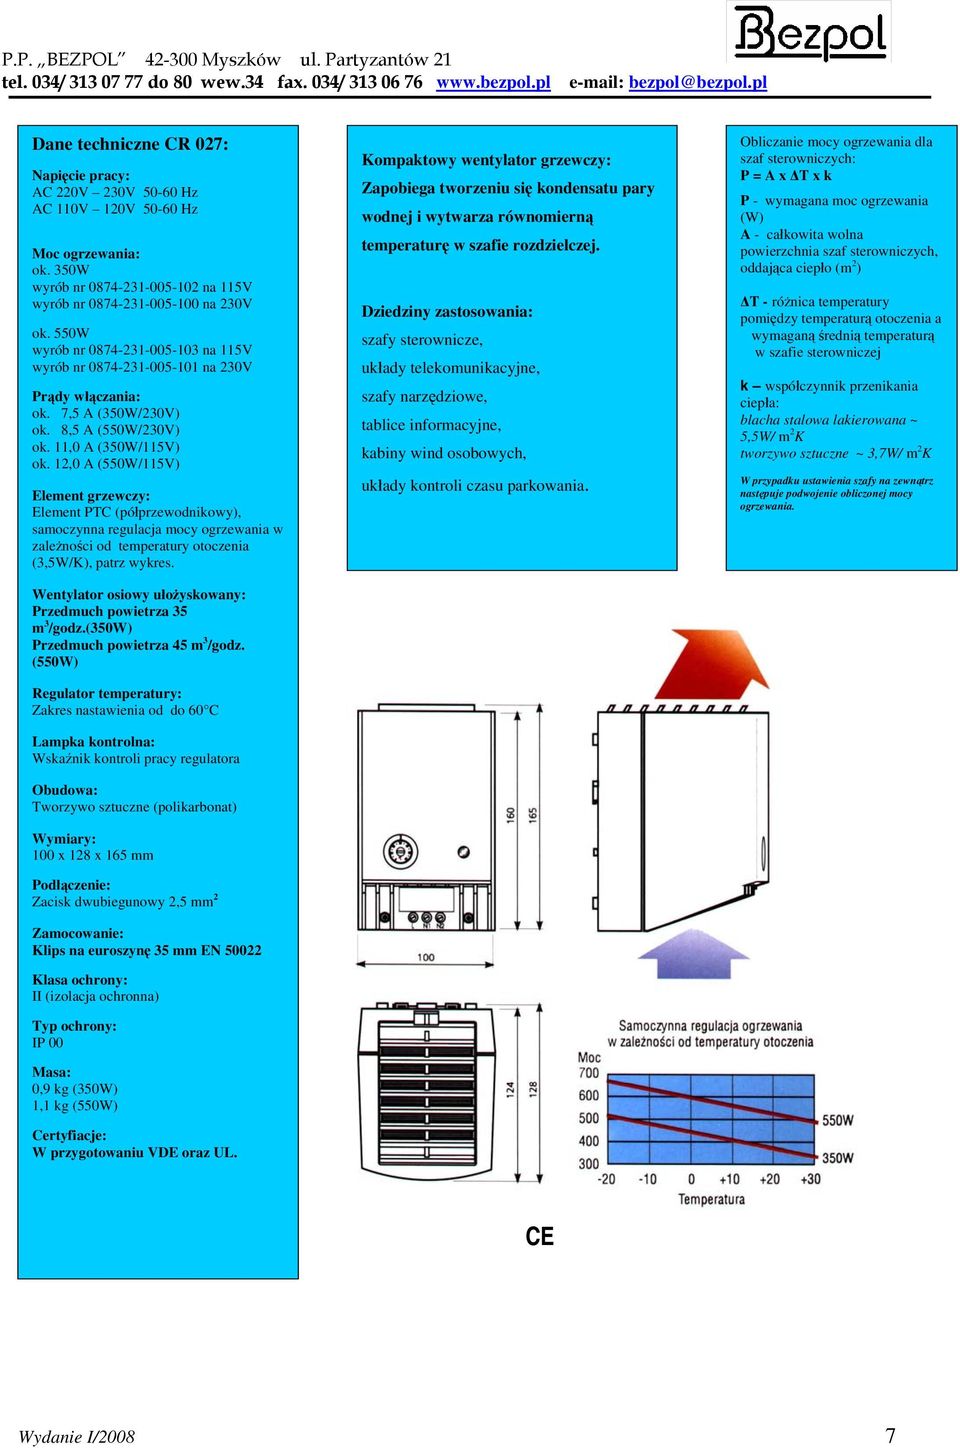 12,0 A (550W/115V) Element grzewczy: Element PTC (półprzewodnikowy), samoczynna regulacja mocy ogrzewania w zależności od temperatury otoczenia (3,5W/K), patrz wykres.